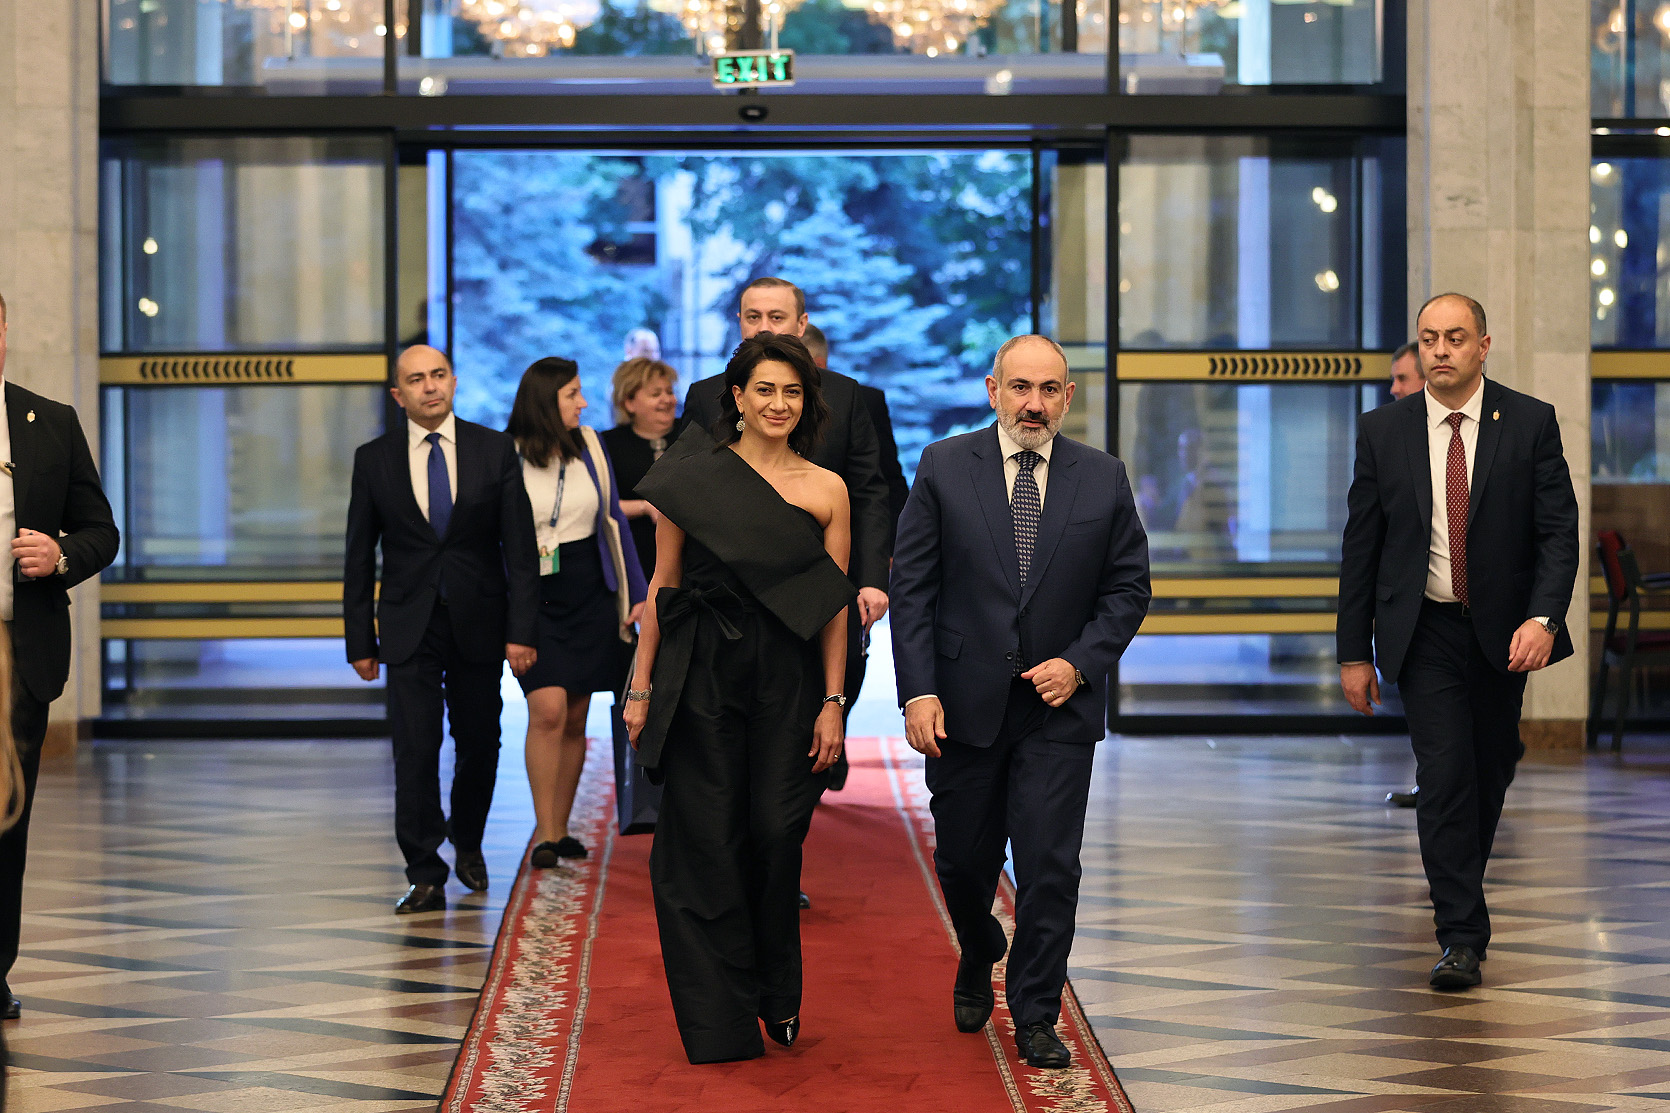 Пашинян вместе с супругой посетил концерт в рамках саммита Европейского политсообщества